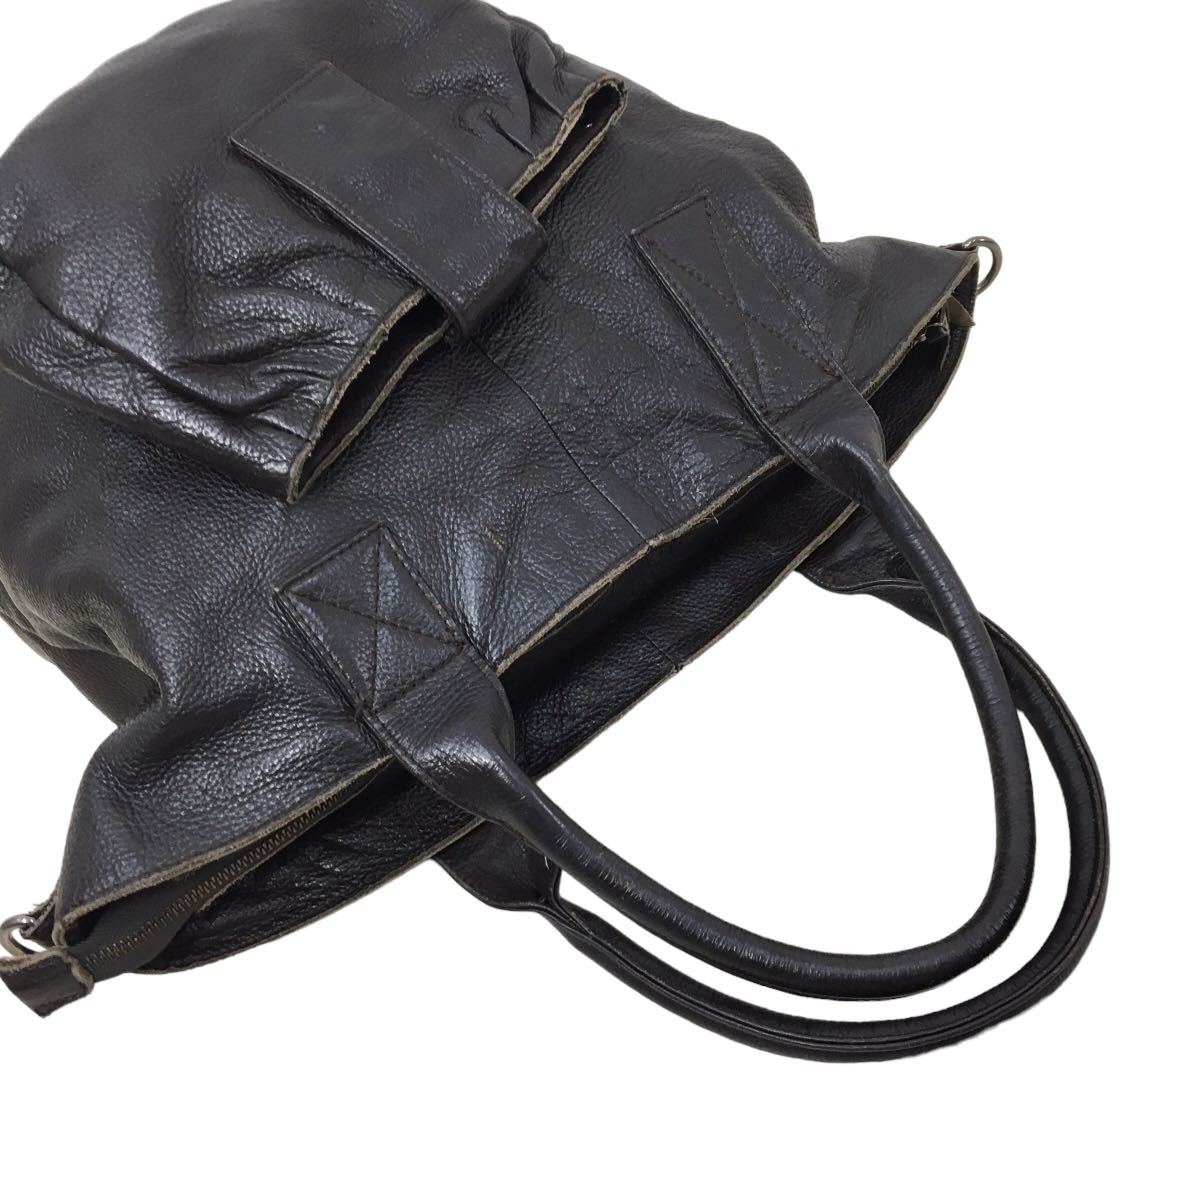 D491 慈雨 ジウ 本革 レザー 皮革 ハンドバッグ ショルダーバッグ デザイン 手持ち 肩掛け かばん カバン 鞄 バッグ BAG ダークブラウン_画像6